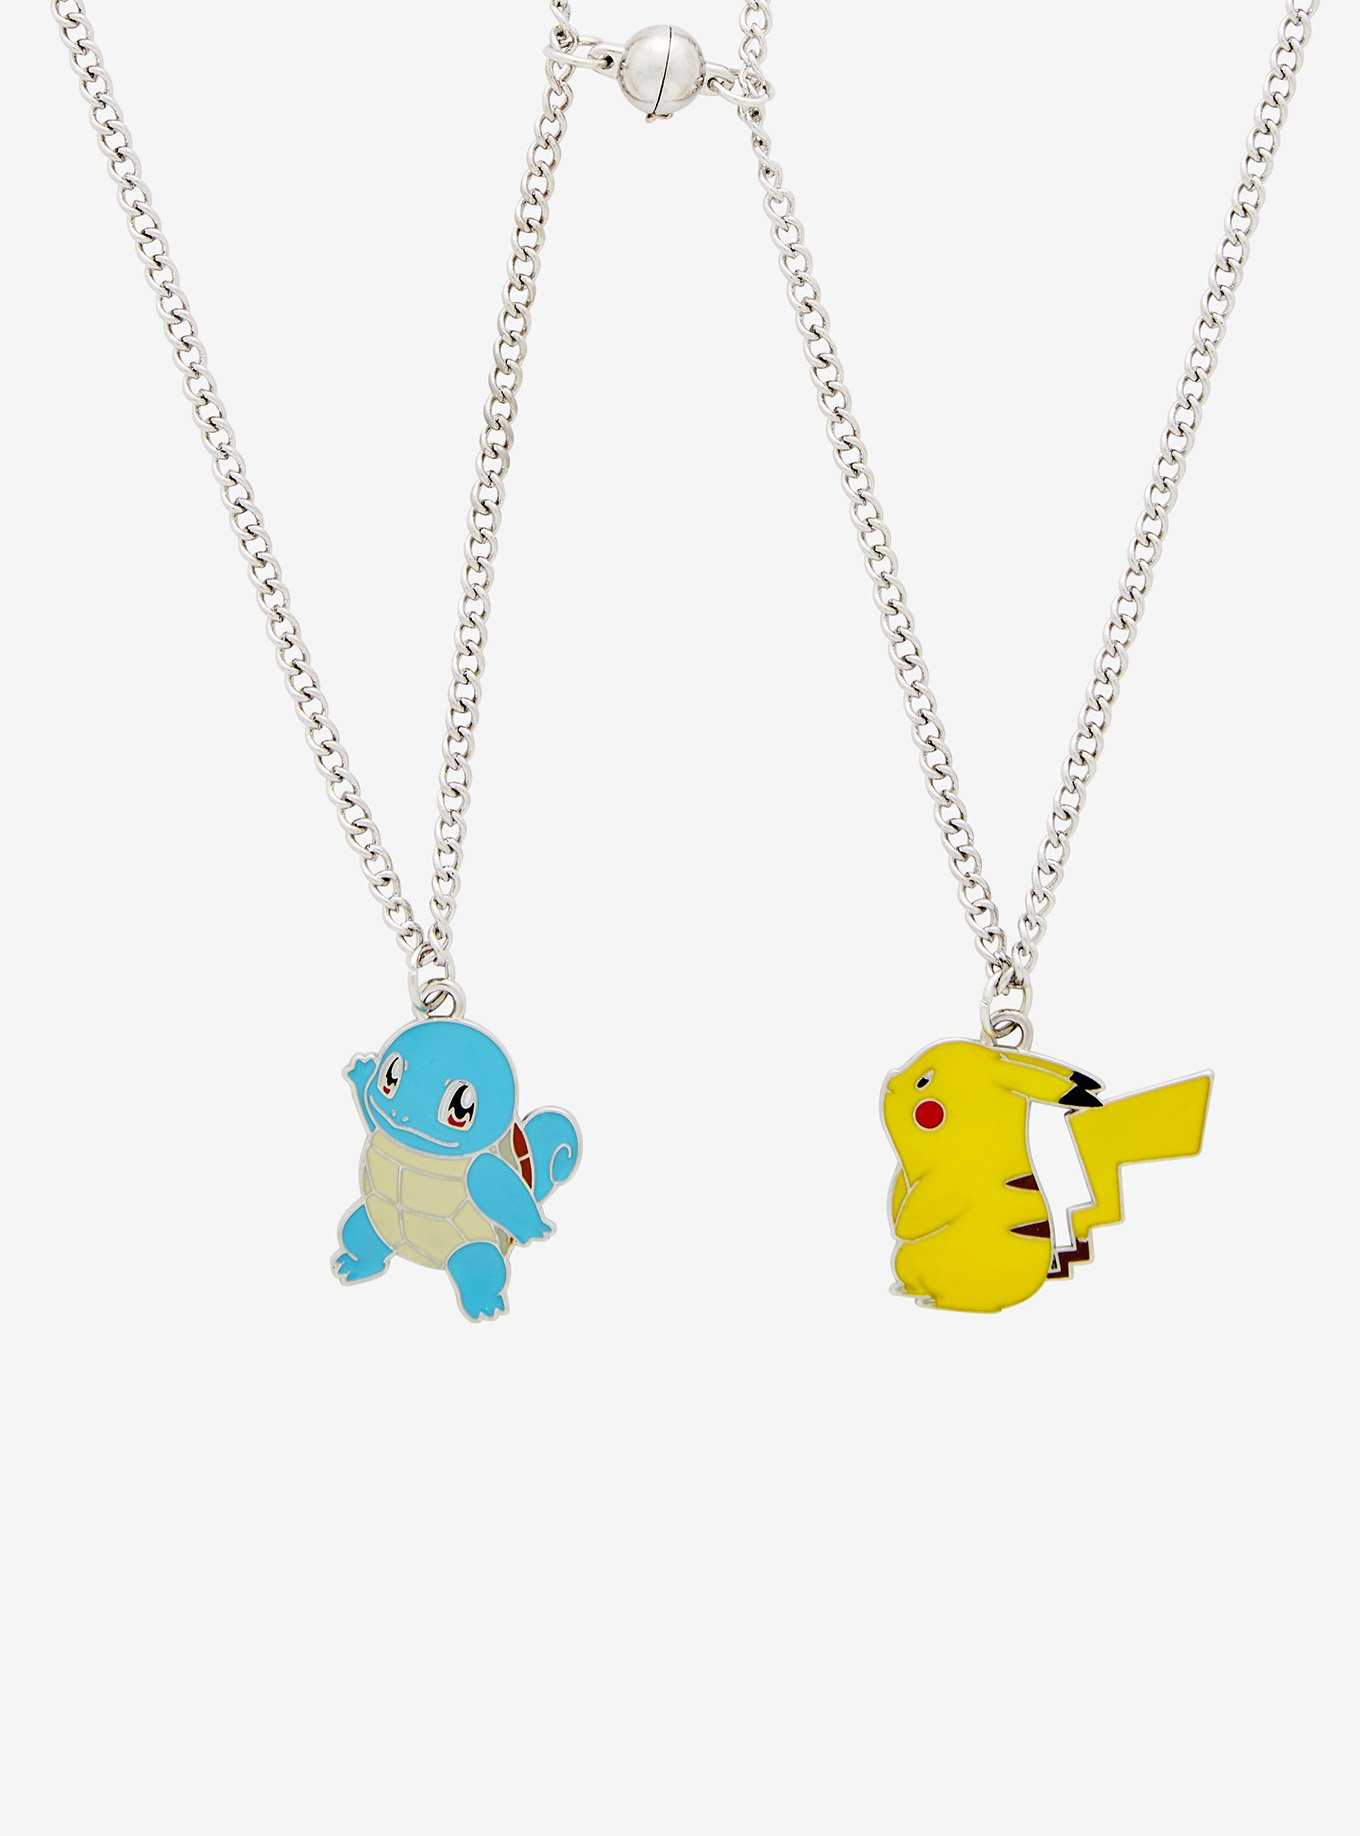 Pokemon Pikachu & Squirtle Best Friend Necklace Set, , hi-res